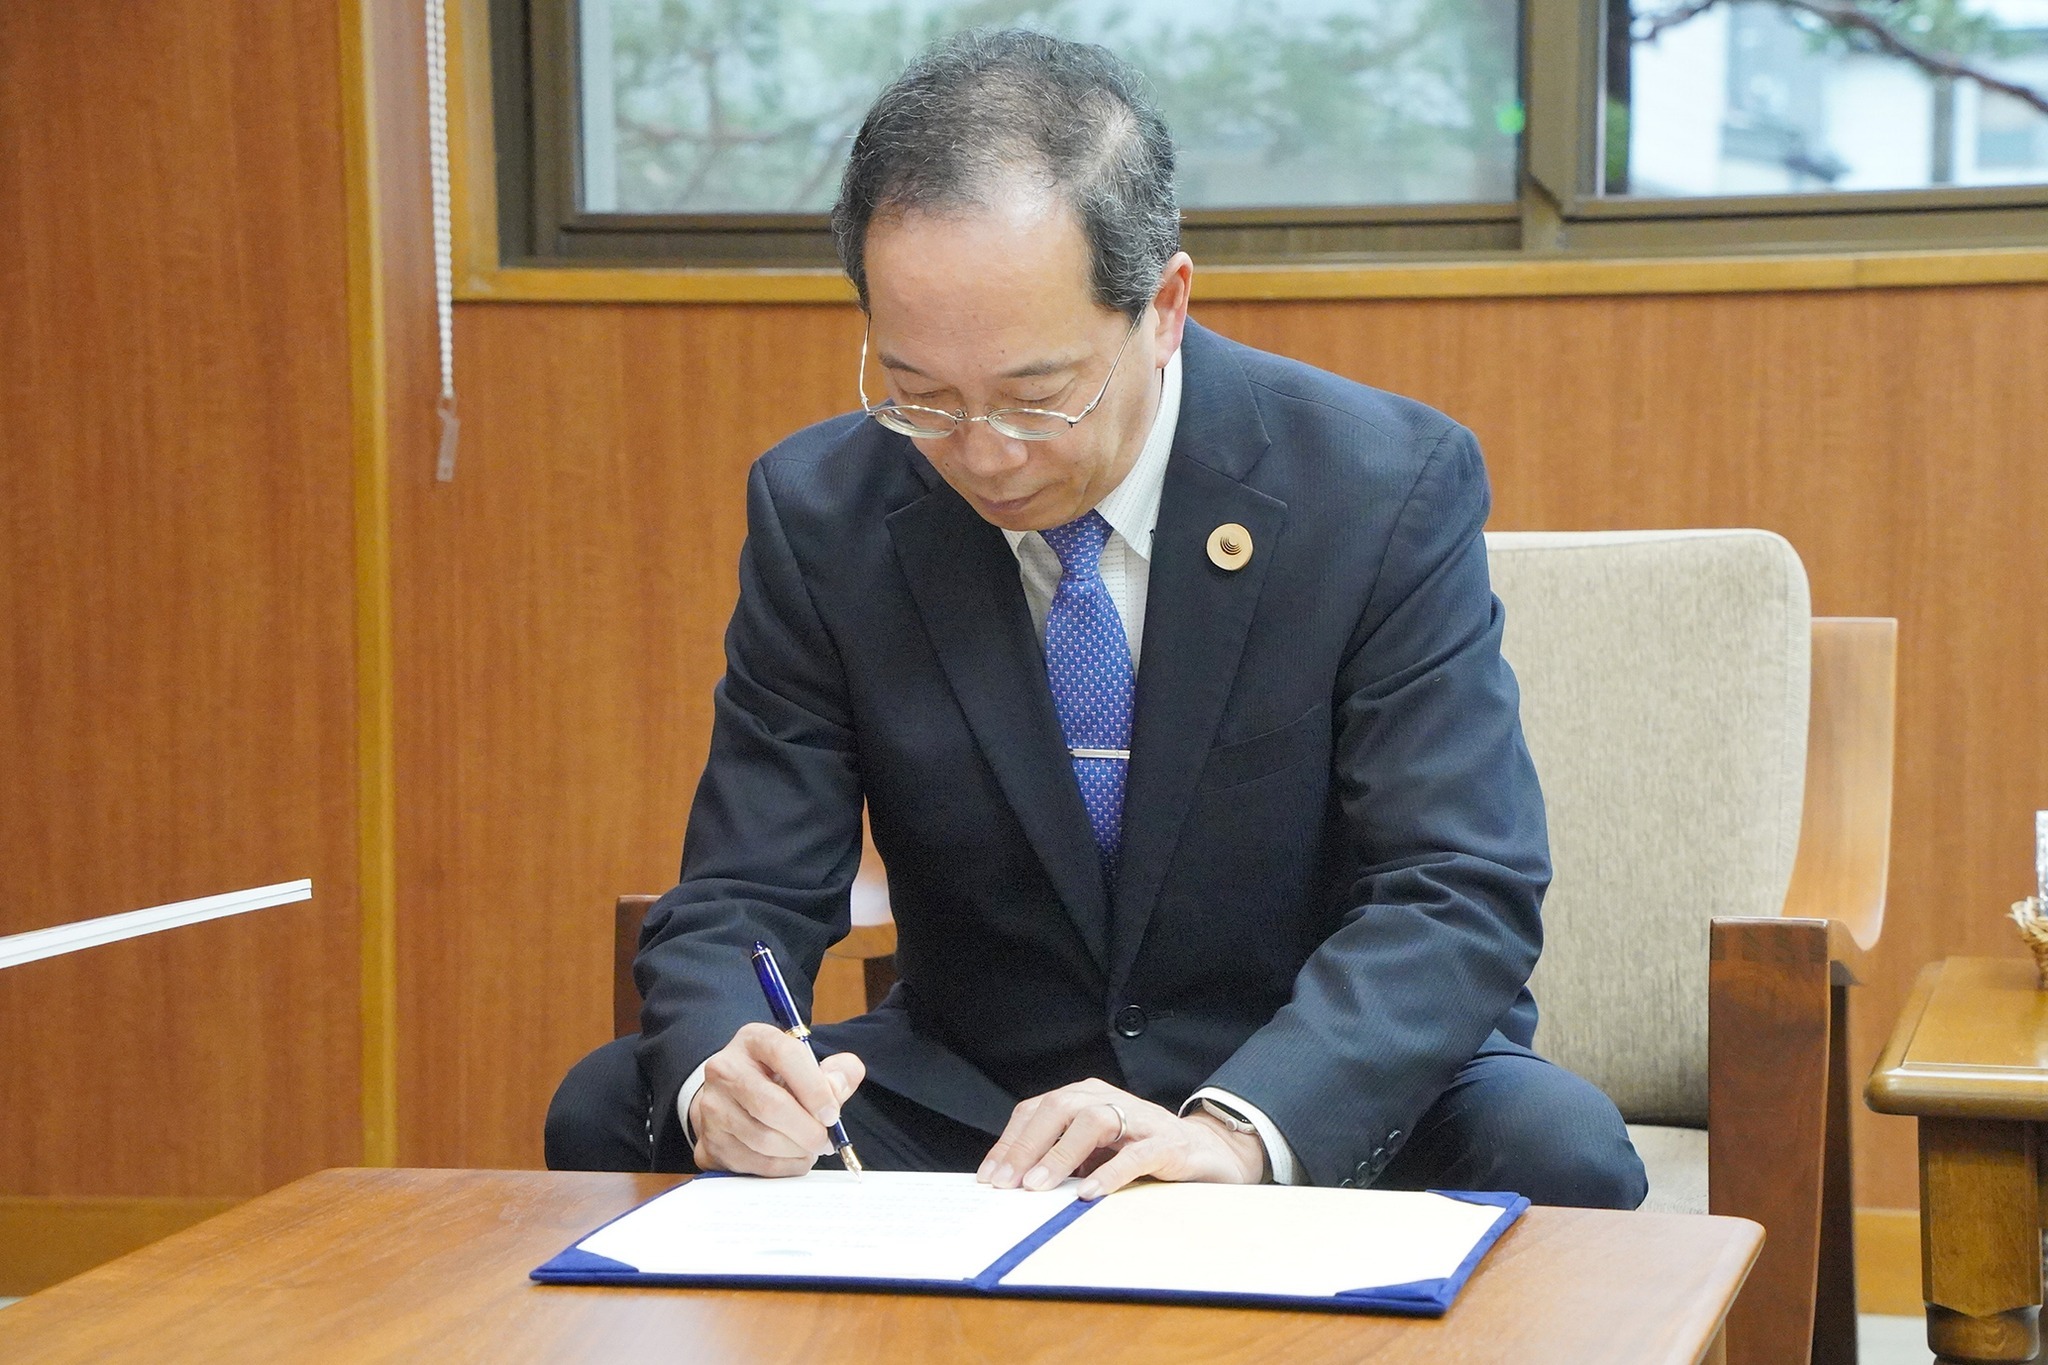 宣言書にサインをする都竹市長の様子